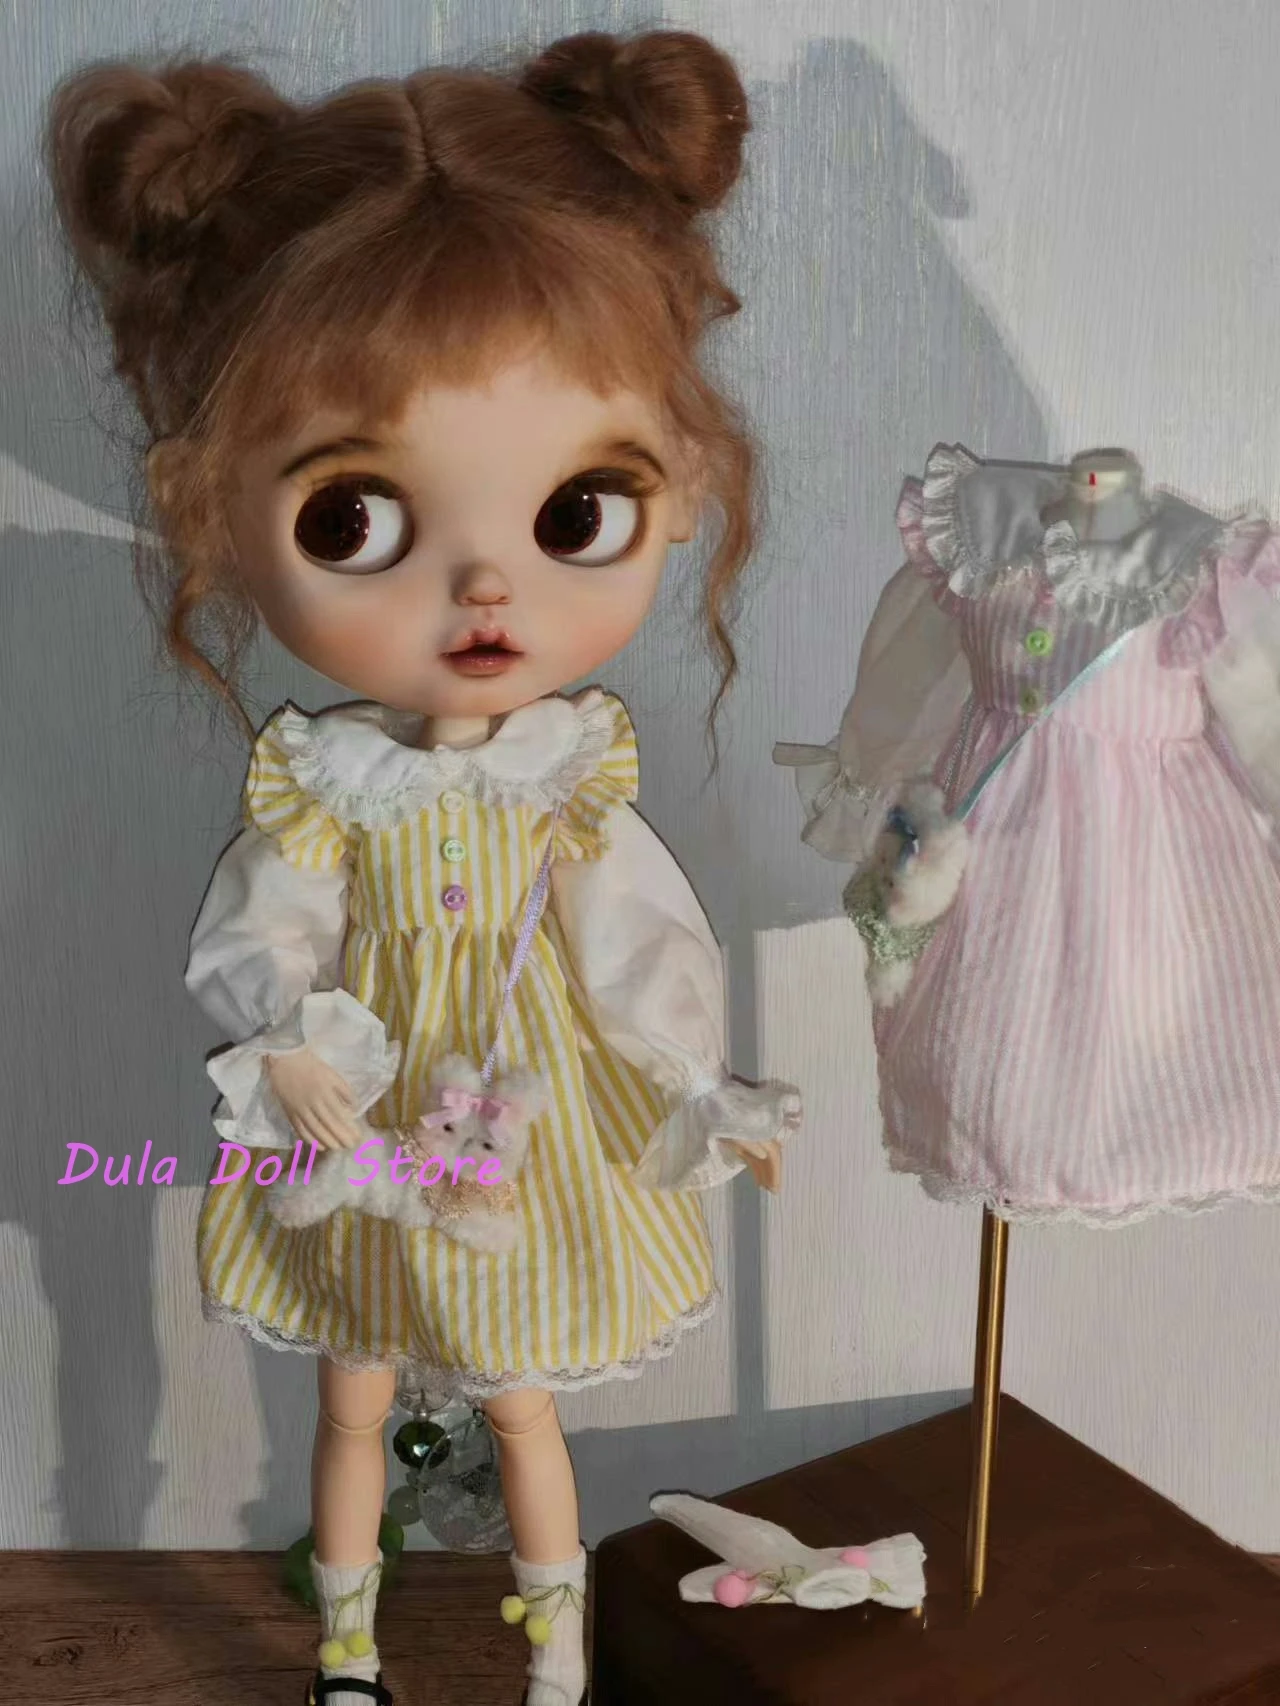 Одежда для куклы Dula Платье кружевная юбка в вертикальную полоску Blythe Qbaby ob24 ob22 Azone Licca ICY JerryB 1/6 Аксессуары для кукол Bjd 0